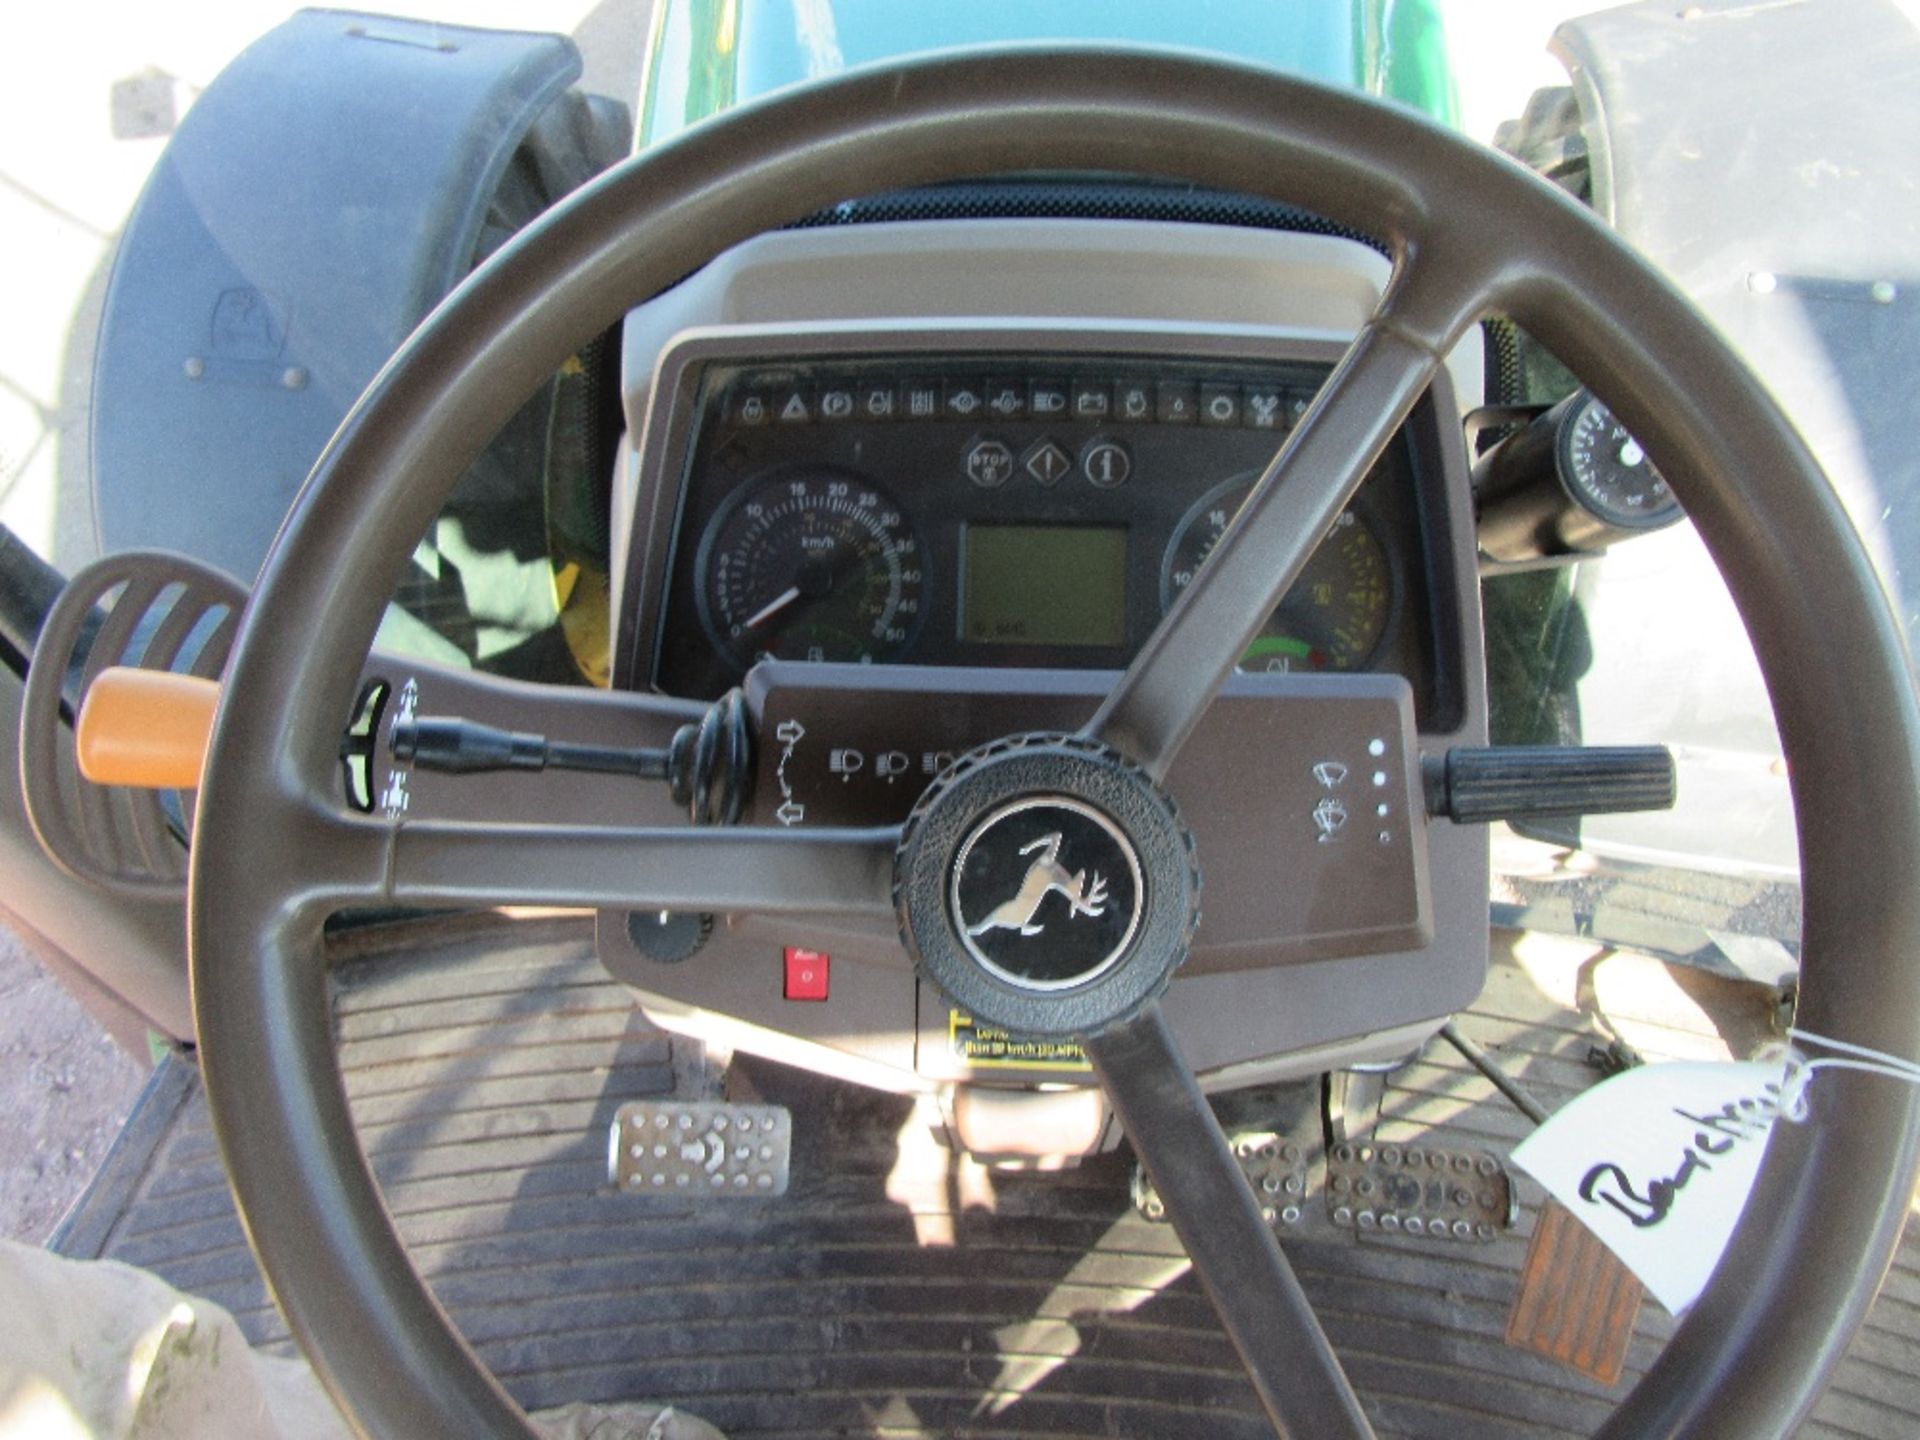 John Deere 6920 Tractor Reg.No. SK55 AAO Ser No 465204 - Image 15 of 17